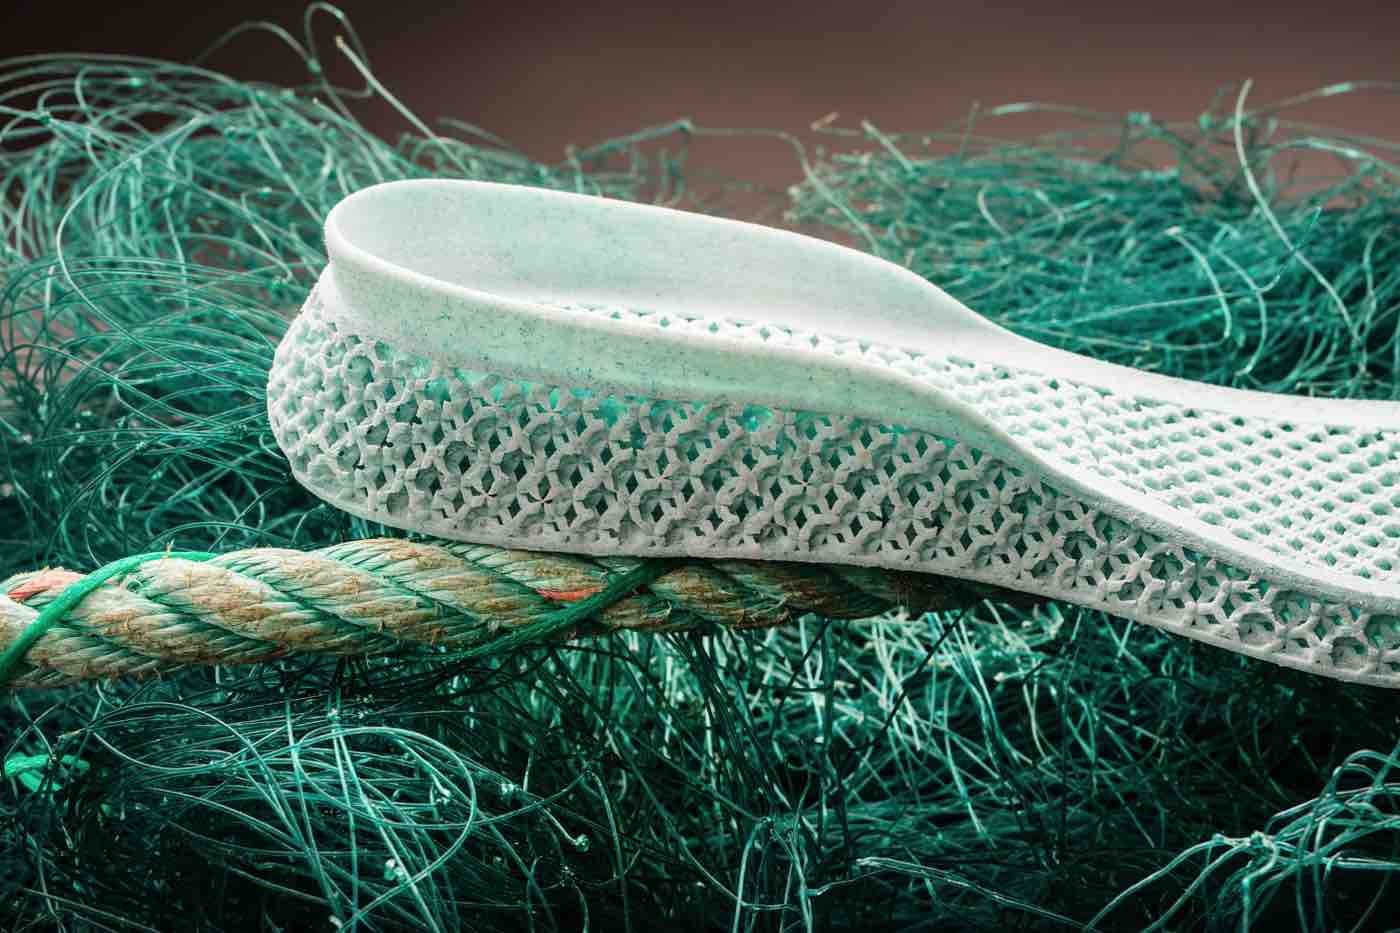 کفش آدیداس که با پسماندهای دریایی به صورت سه بعدی پرینت شده است